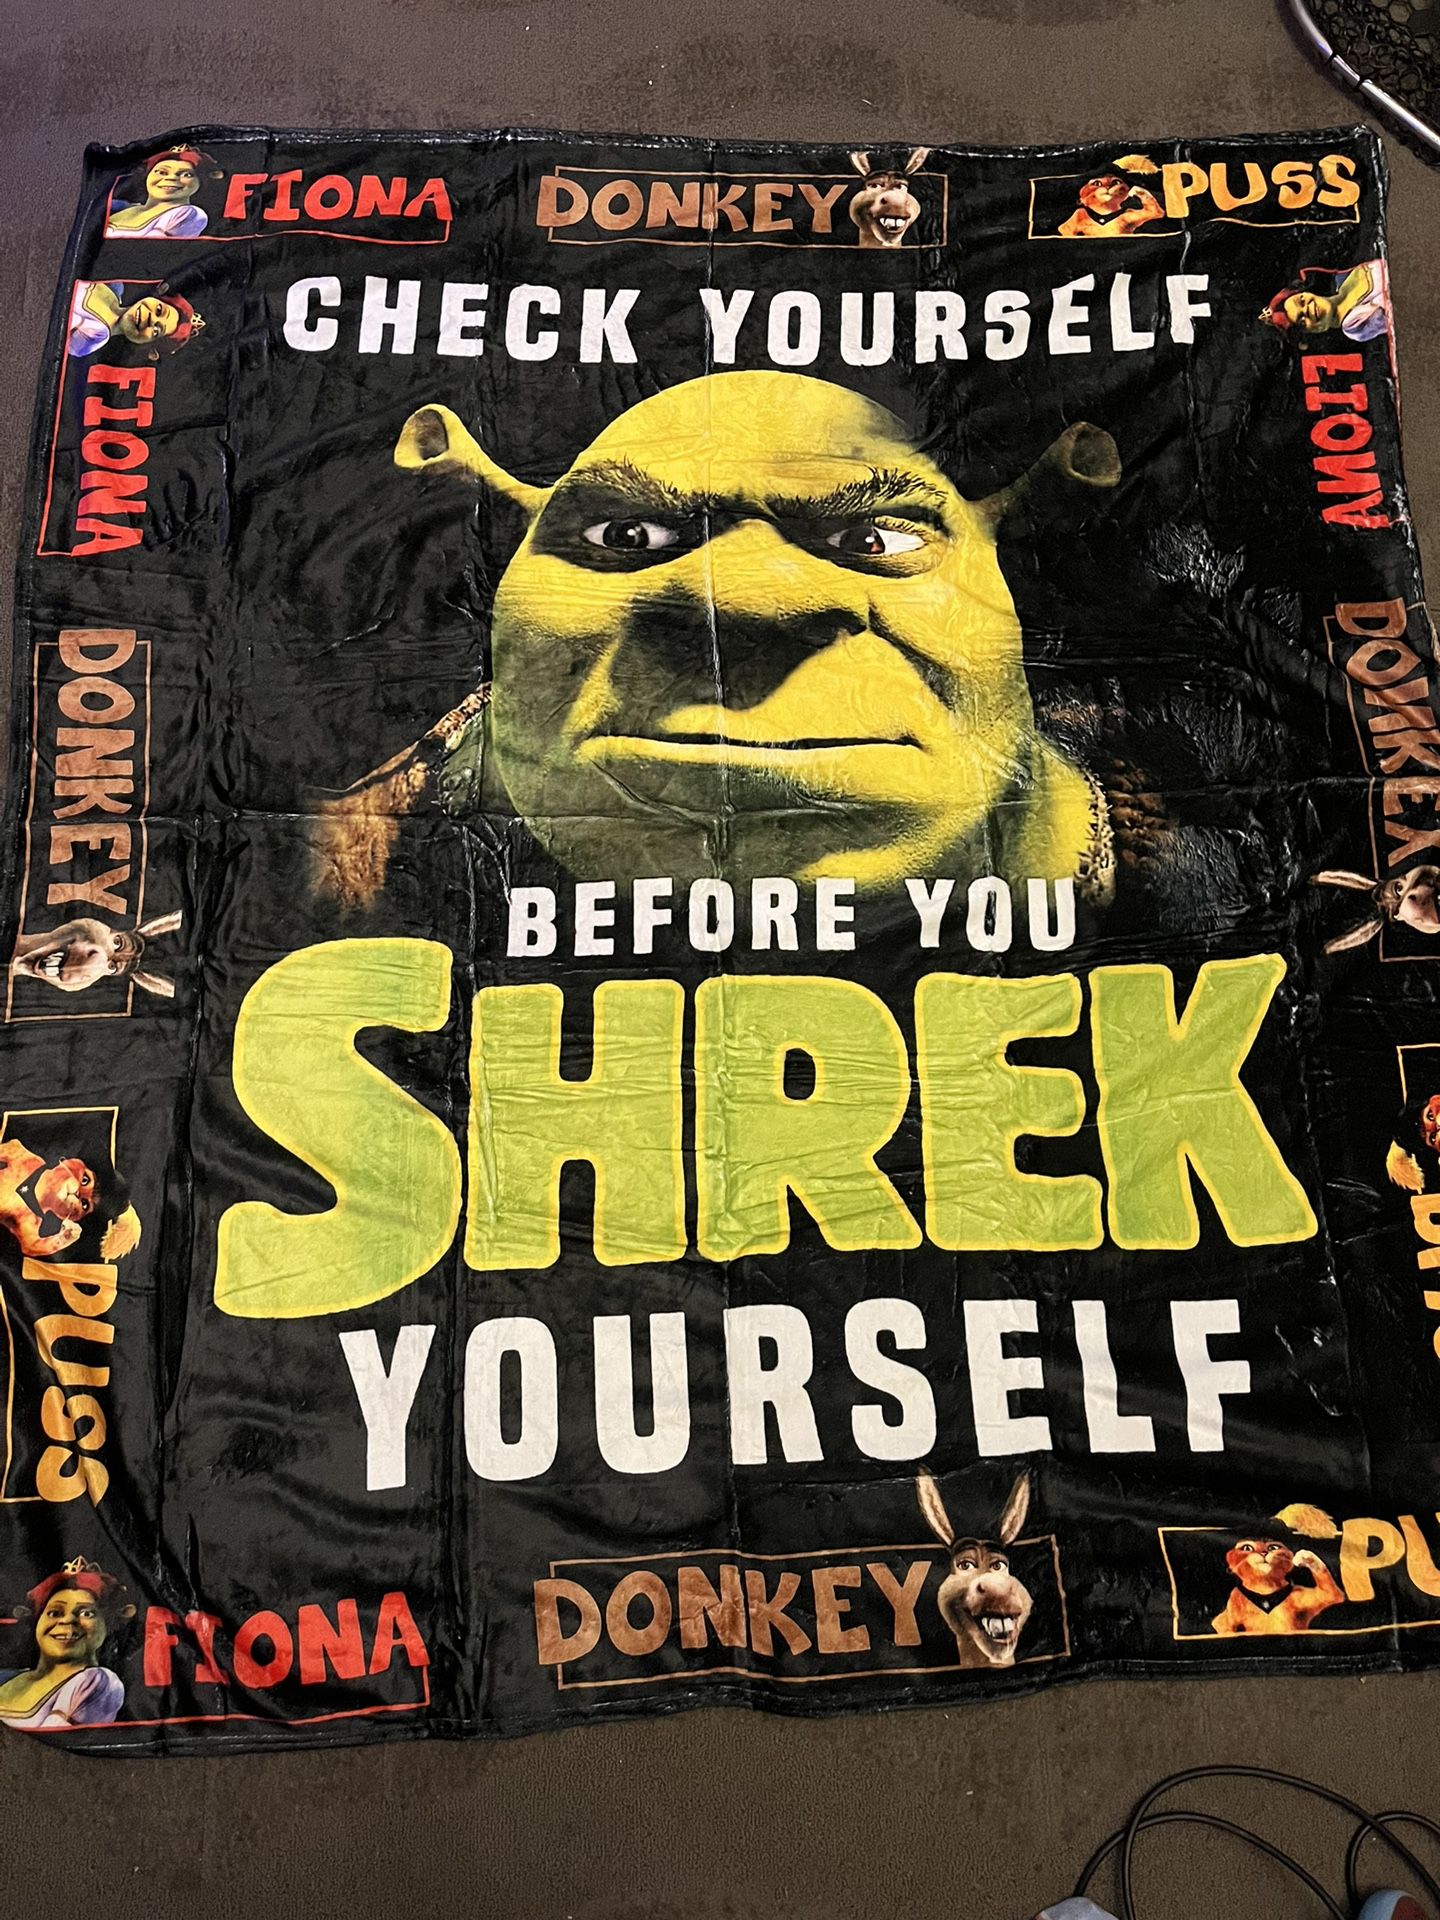 Shrek Blanket 